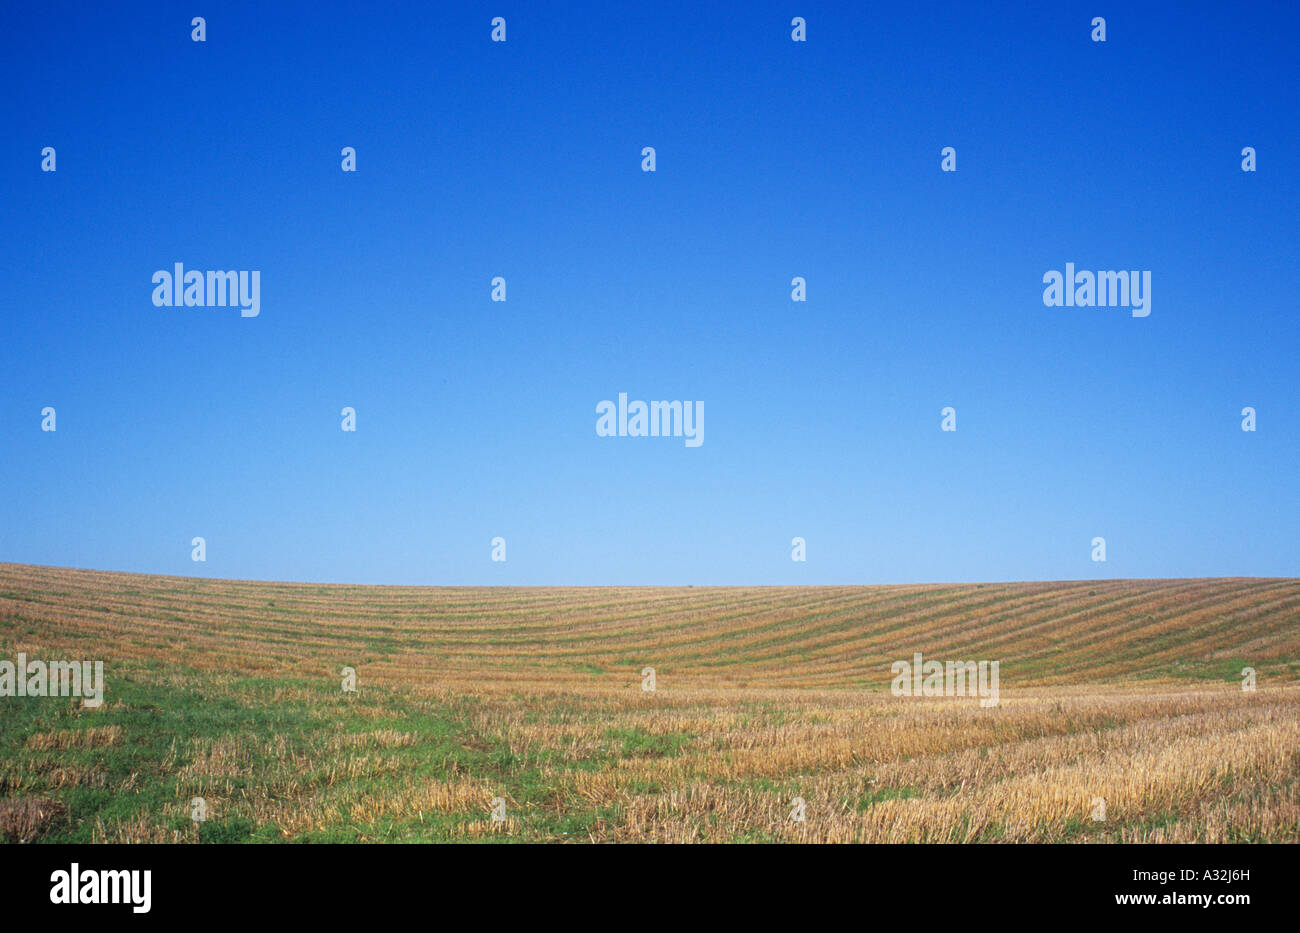 Sanft hügelige Gebiet der goldenen braunen Getreidestoppeln übersät mit dem Grün der wachsenden Rasen oder Unkraut unter blauem Himmel Stockfoto